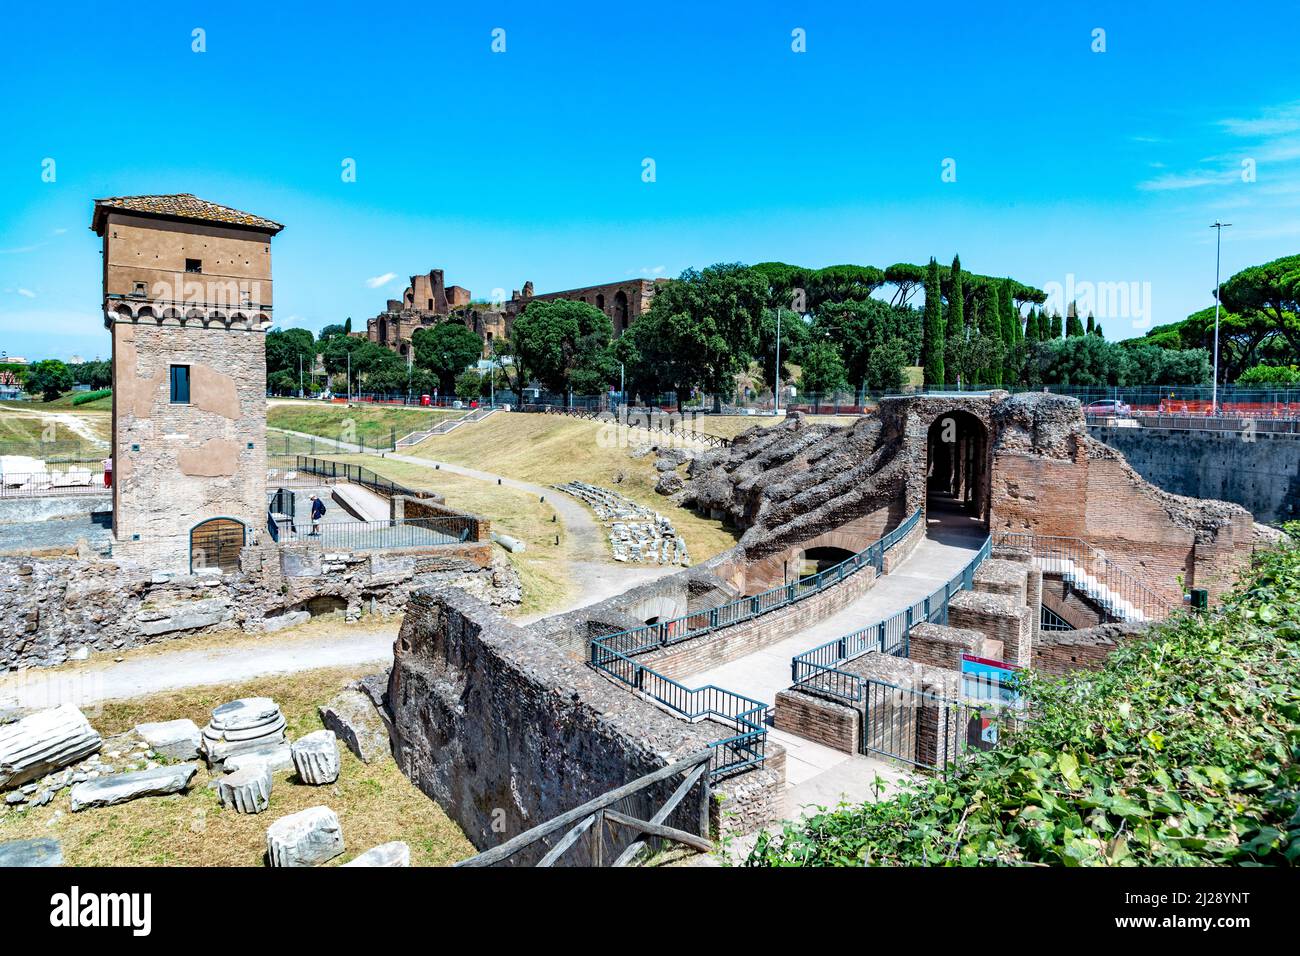 Rome, Italie - 1 août 2021 : les gens visitent le cirque maximus, un stade antique pour les courses de chevaux et autres événements publics dans la Rome antique, Italie. Banque D'Images